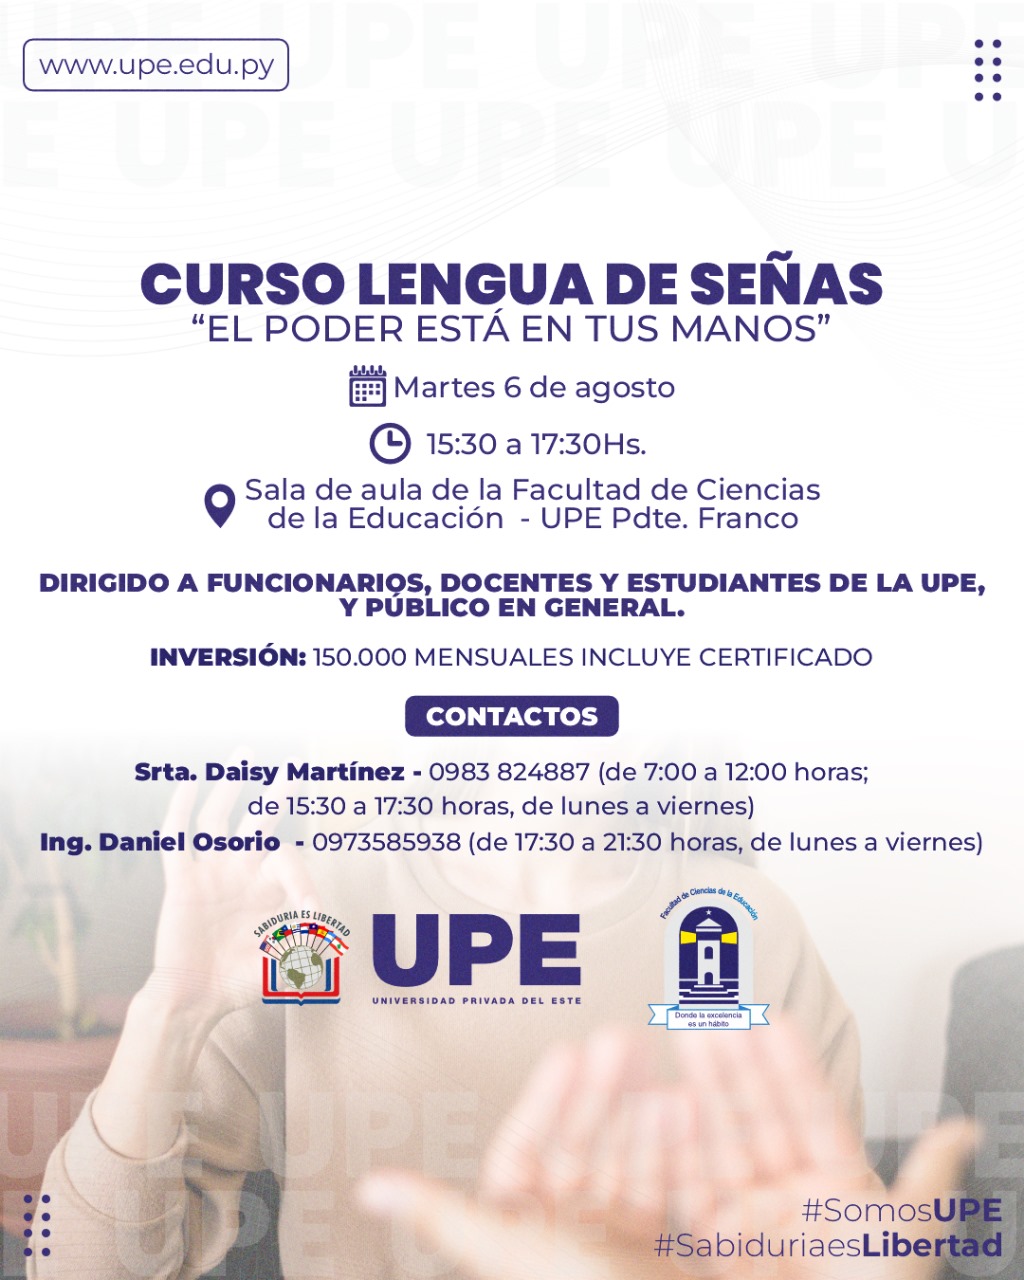 Curso de Lengua de Señas en la UPE: Comunica sin Límites